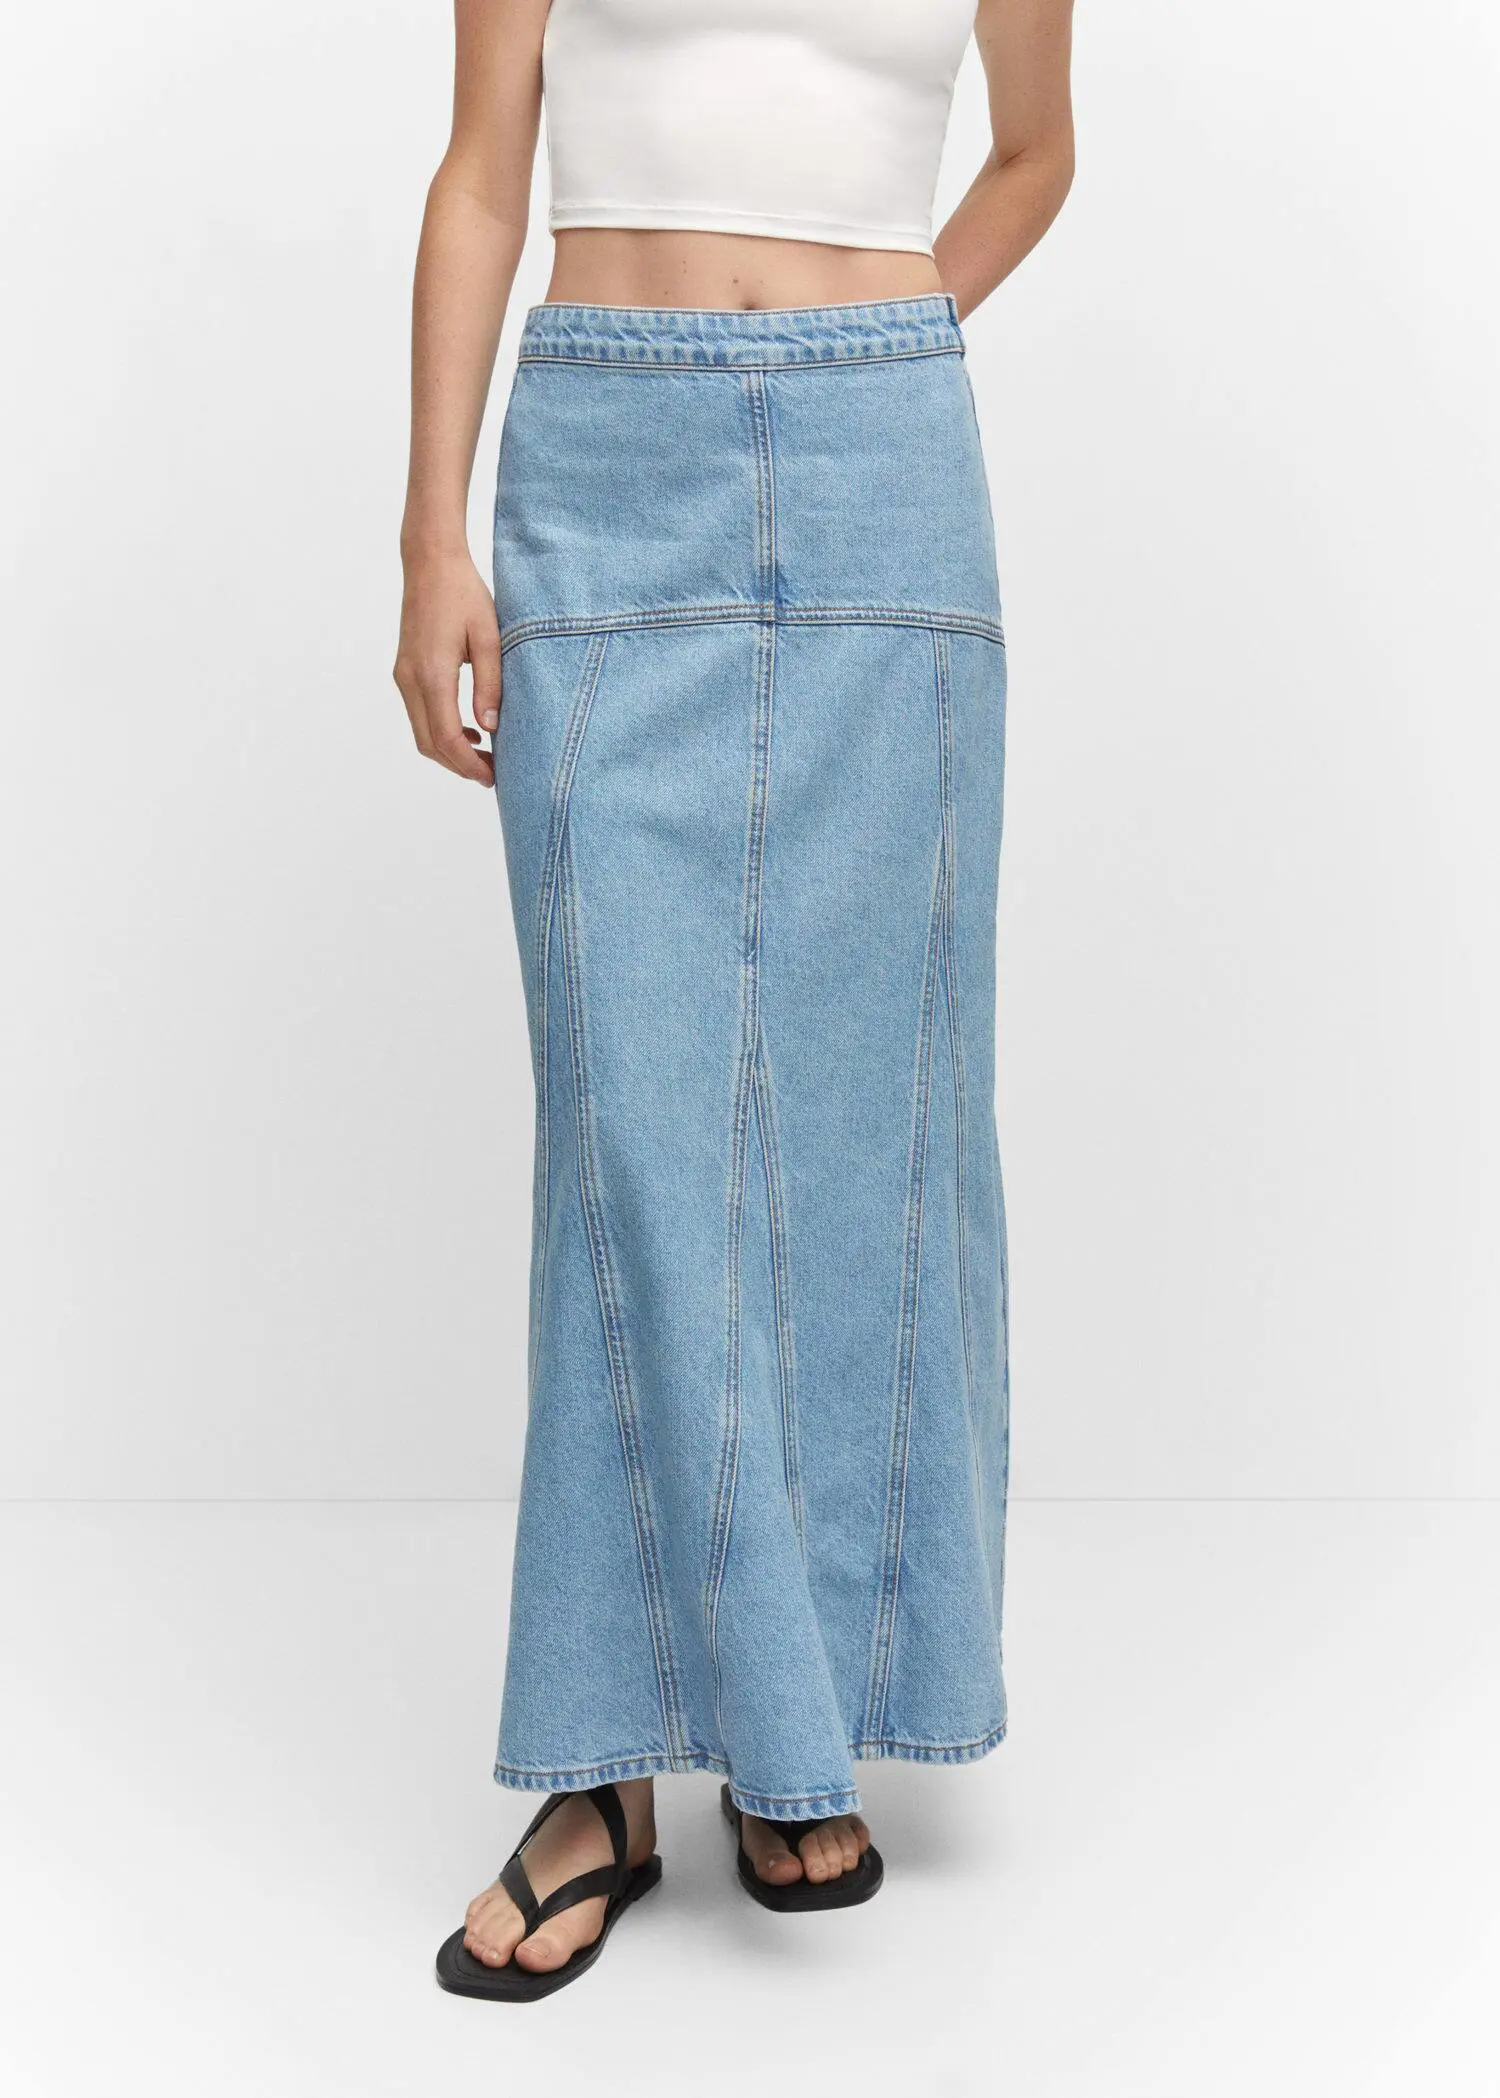 Mango Długa jeansowa spódnica z przeszyciami. 2